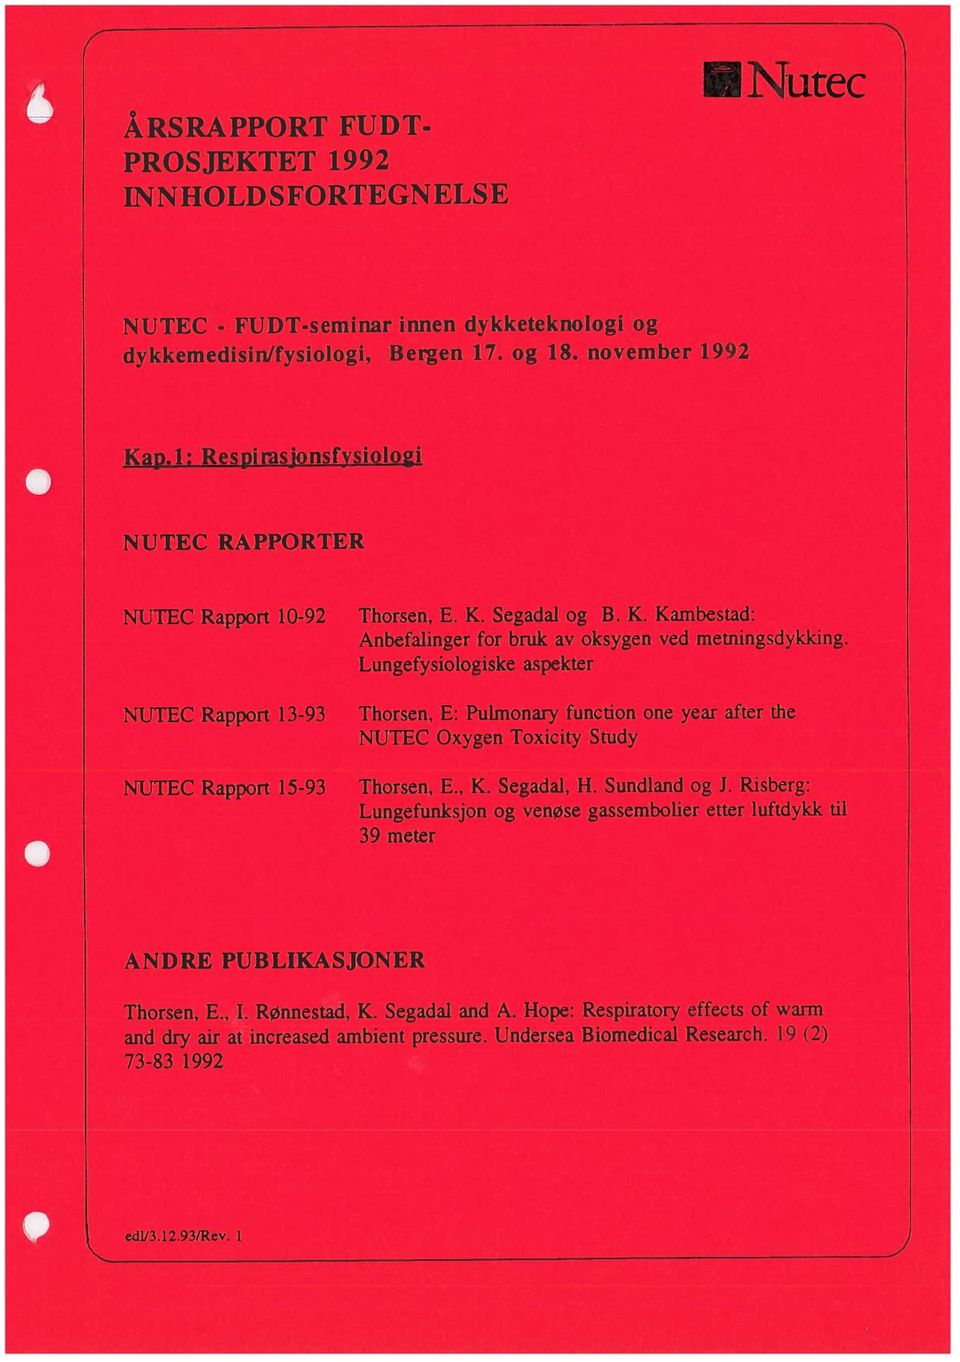 1: Respirasjonsfysio1oi dykkemedisin/fysiologi, Bergen 17. og 18. november 1992 NUTEC - FUDT-seminar innen dykketeknologi og Thorsen, E., 1. Rønnestad, K. Segadal and A.